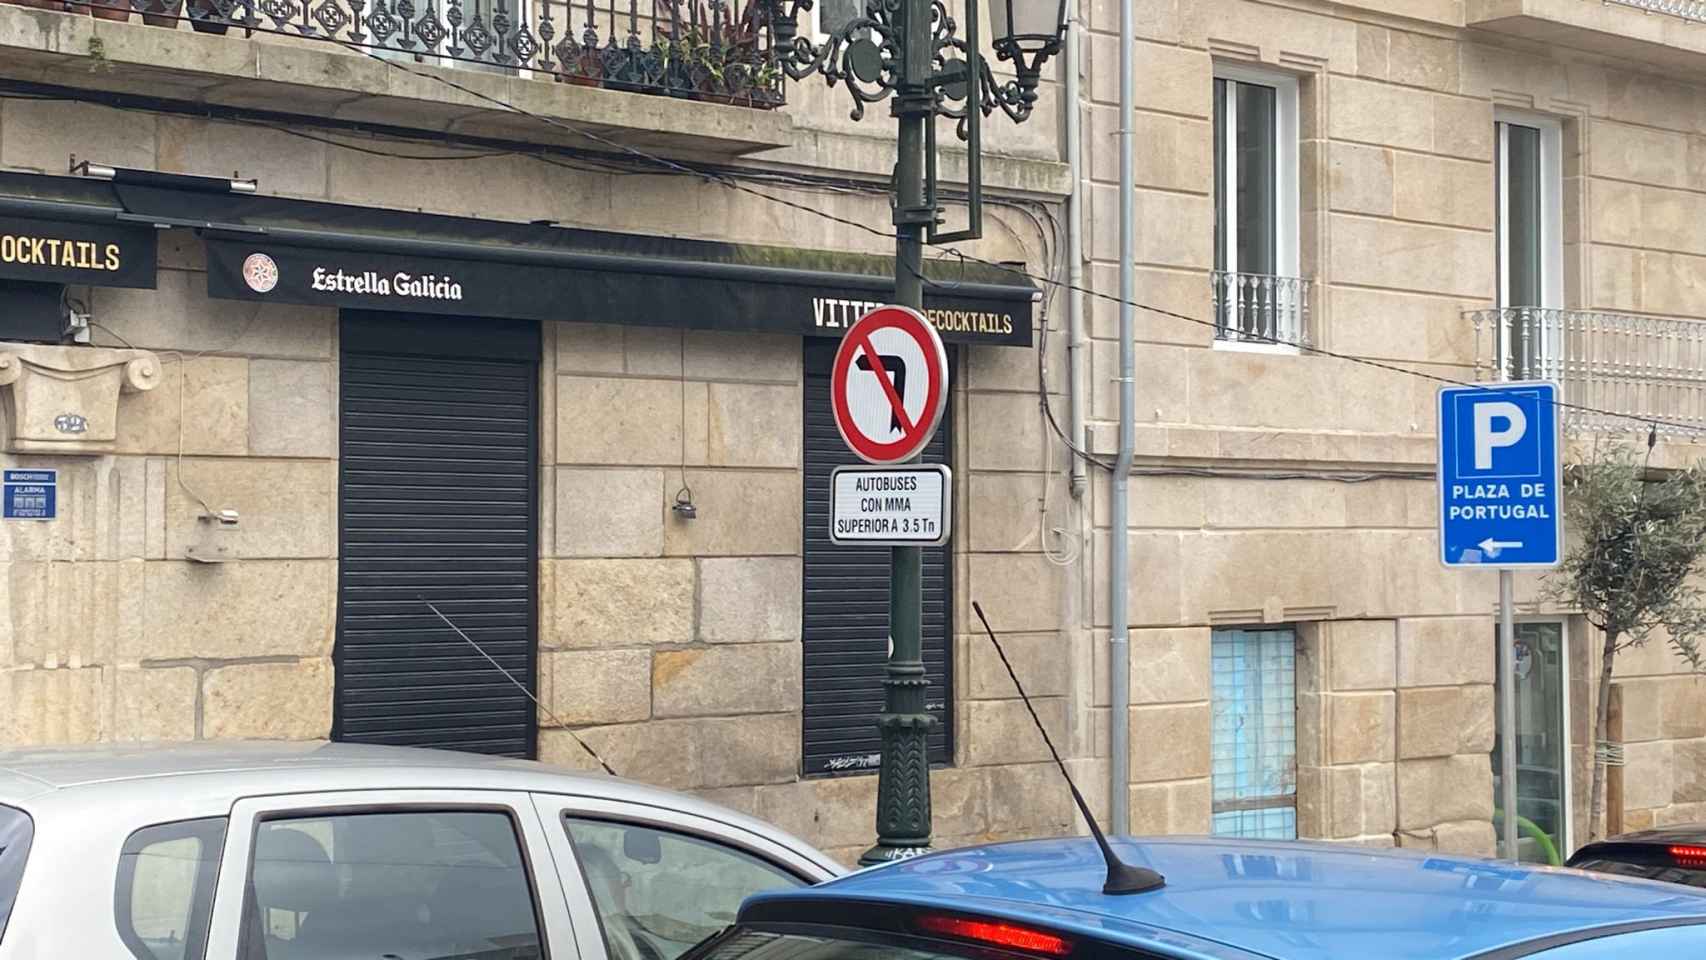 Señal de tráfico instalada en Alfonso XIII, en Vigo, para impedir el giro de los autobuses en Cervantes.